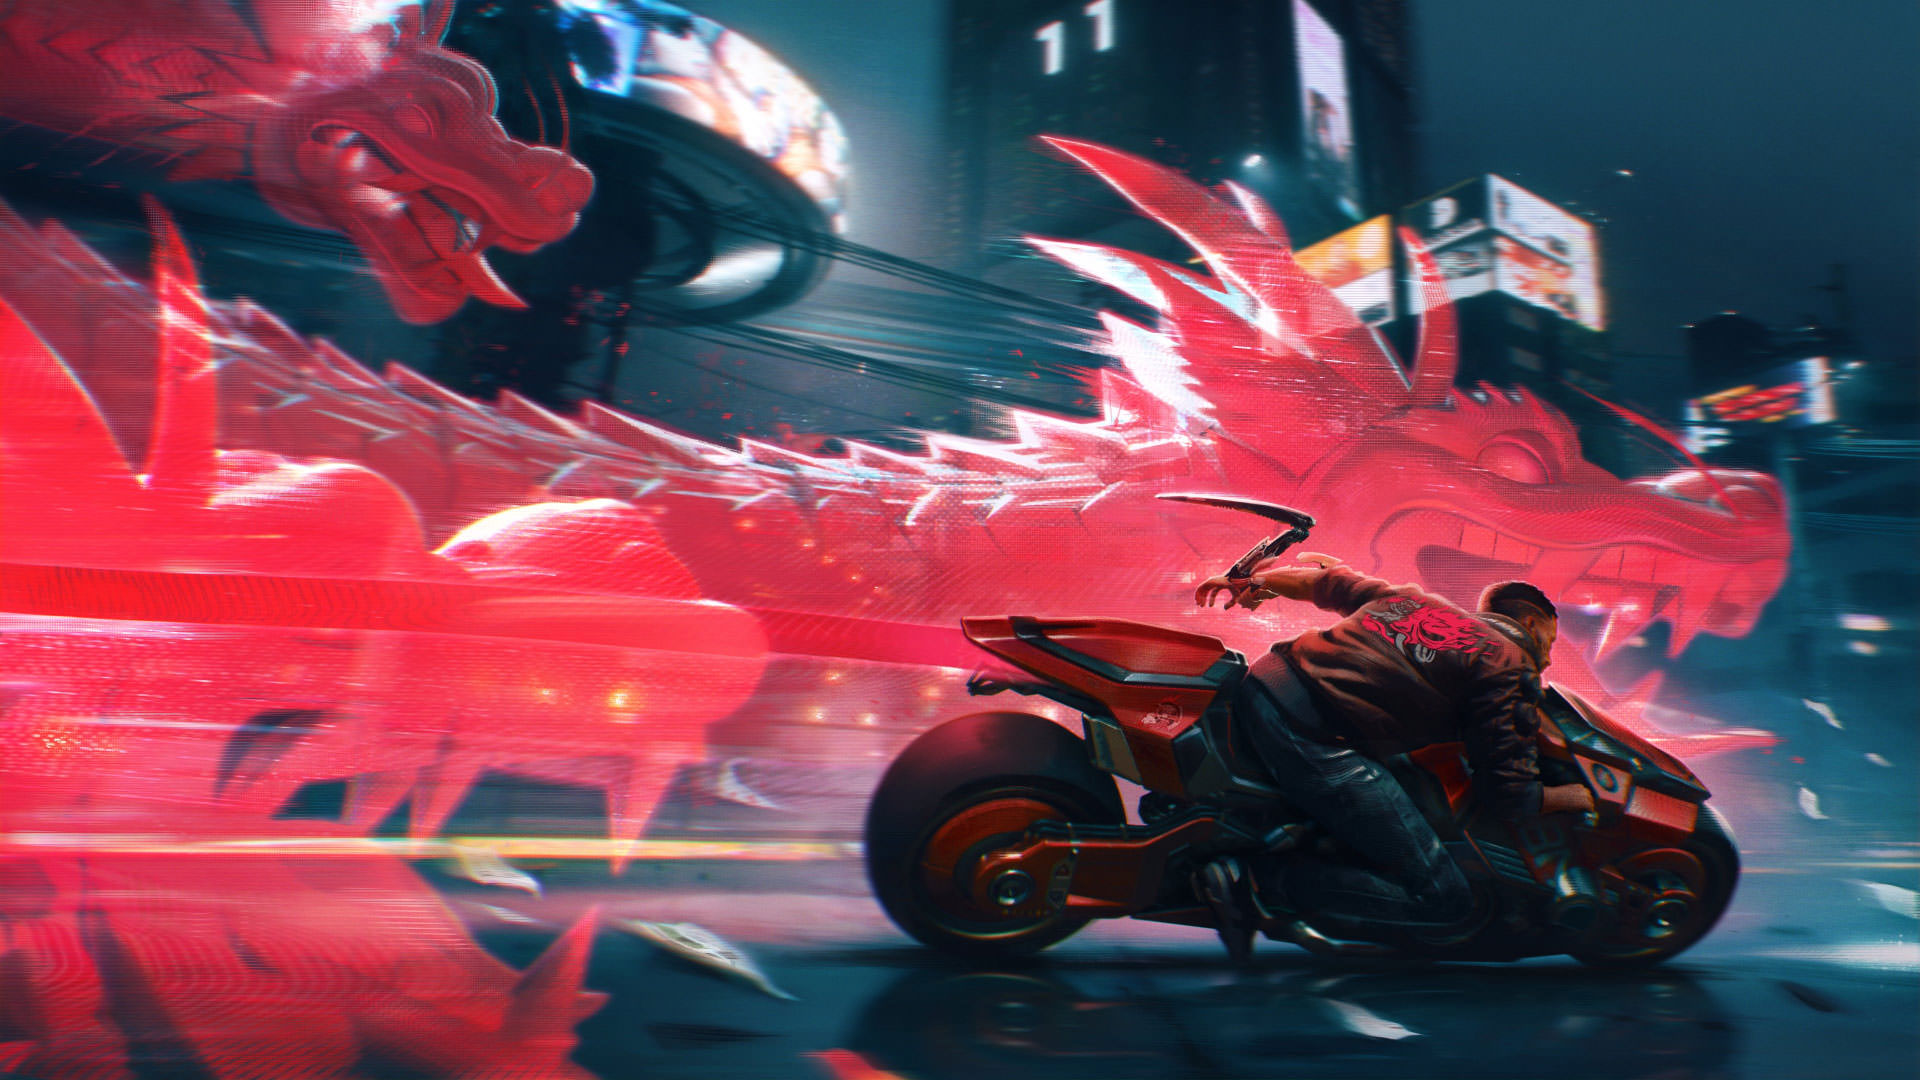 شخصیت V درحال موتورسواری در تصویر هنری بازی Cyberpunk 2077 با حضور یک اژدها دیجیتالی